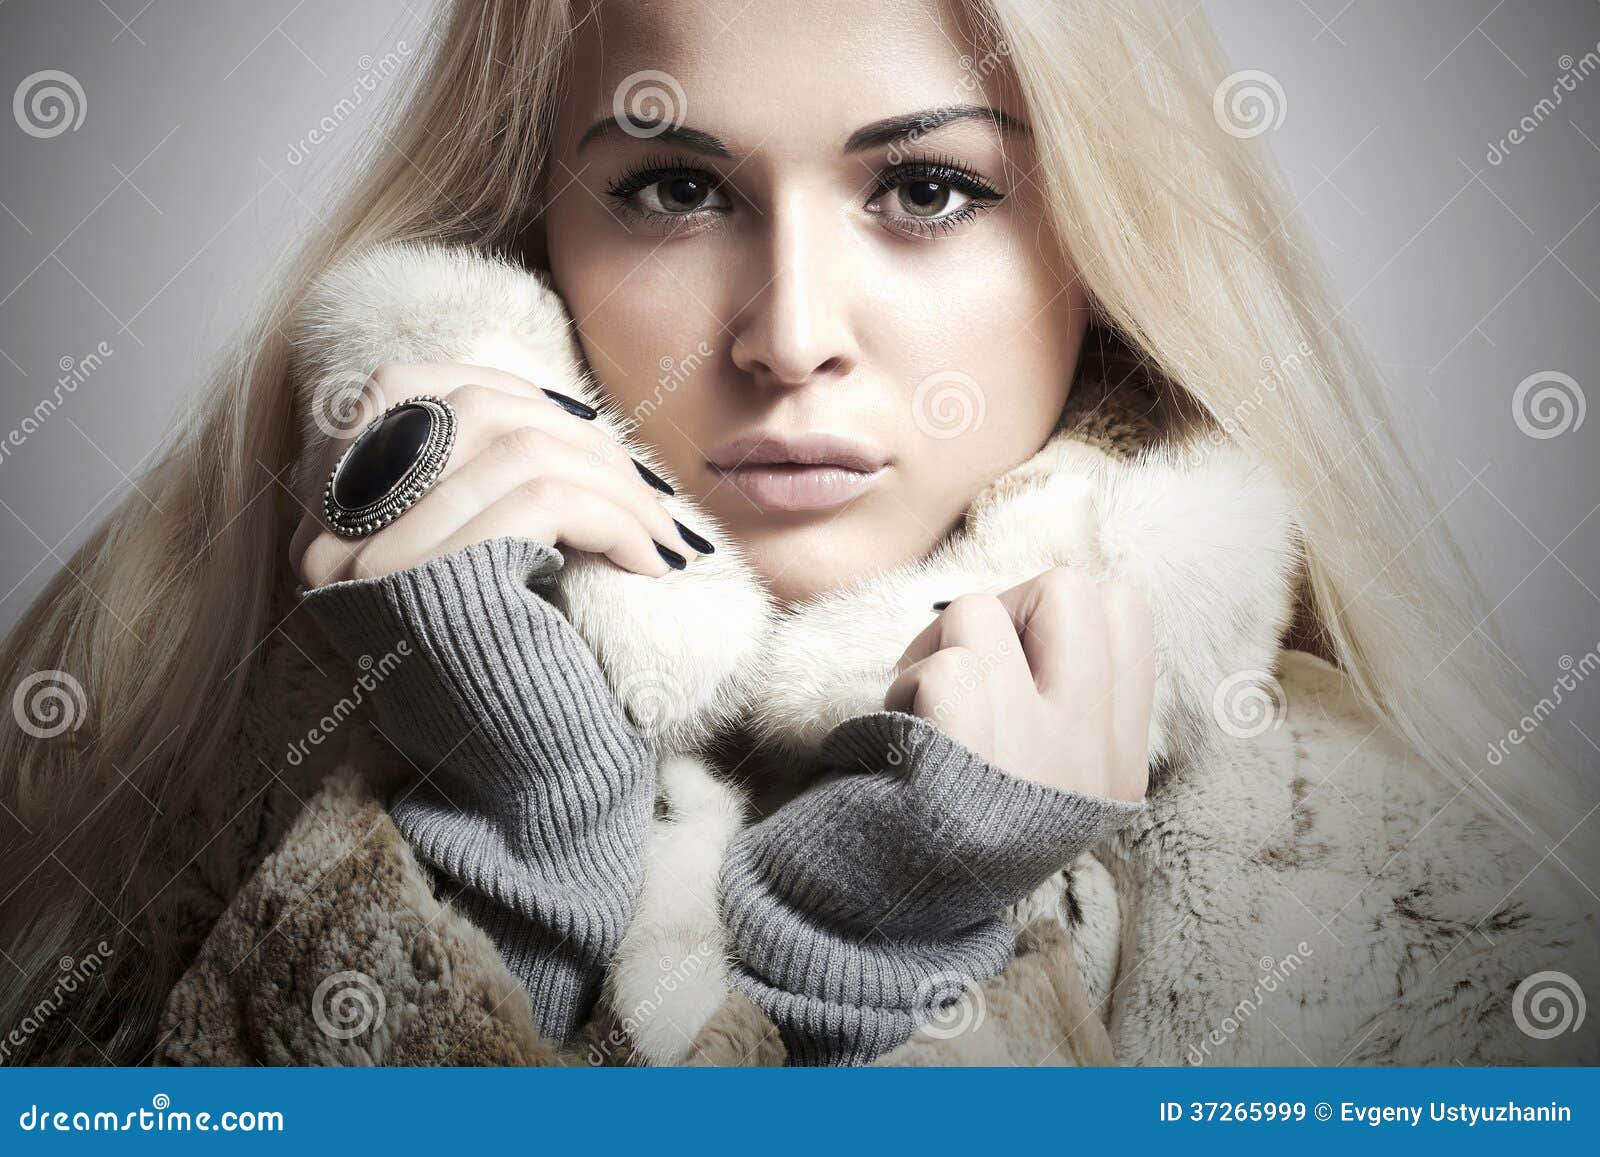 Beauty Blond Model Girl in Mink Fur Coat.Beautiful Woman Stock Image ...